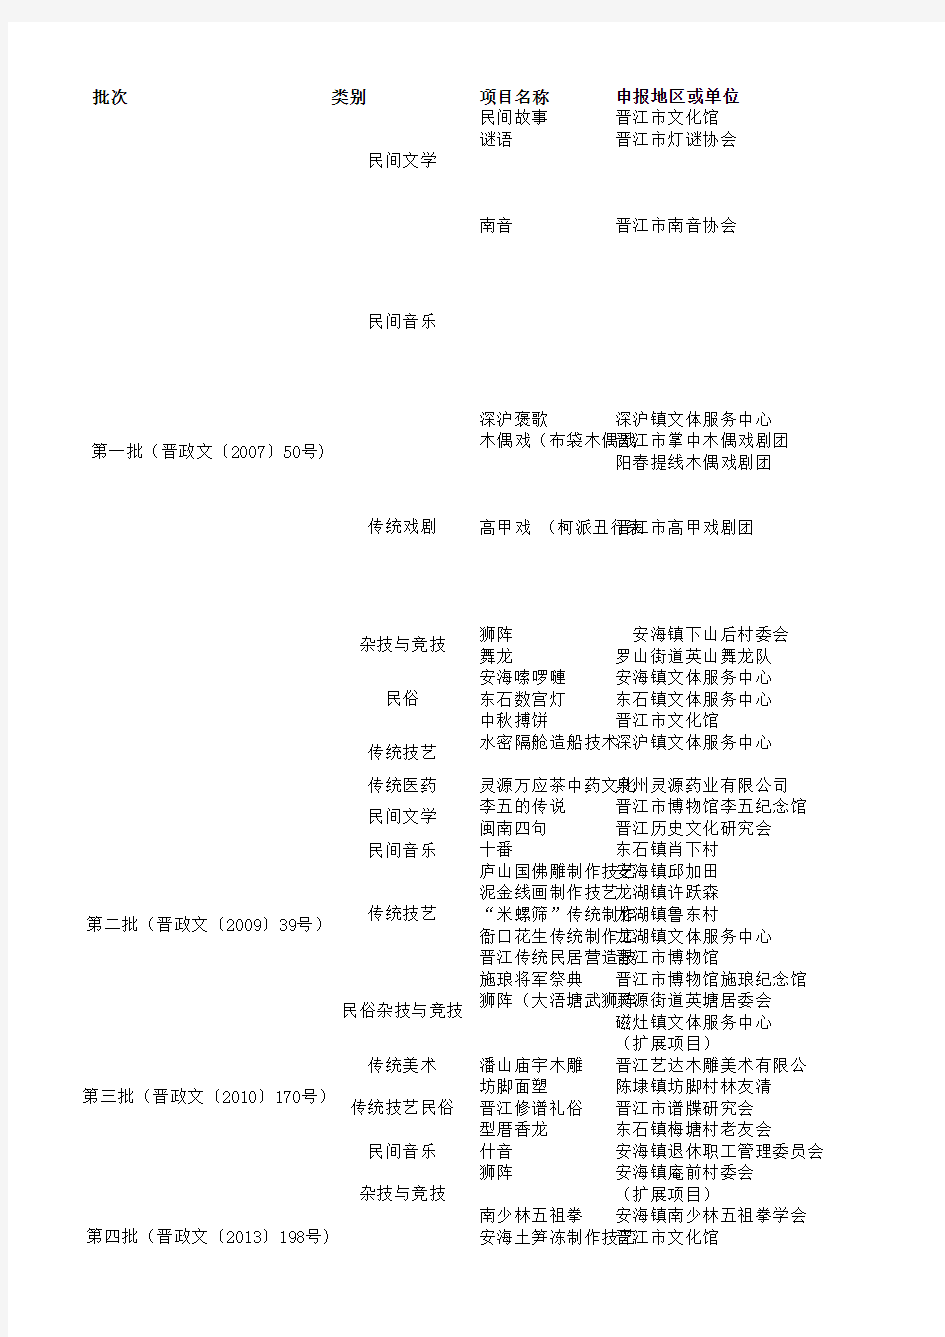 晋江市第一二三四批非物质文化遗产名录表